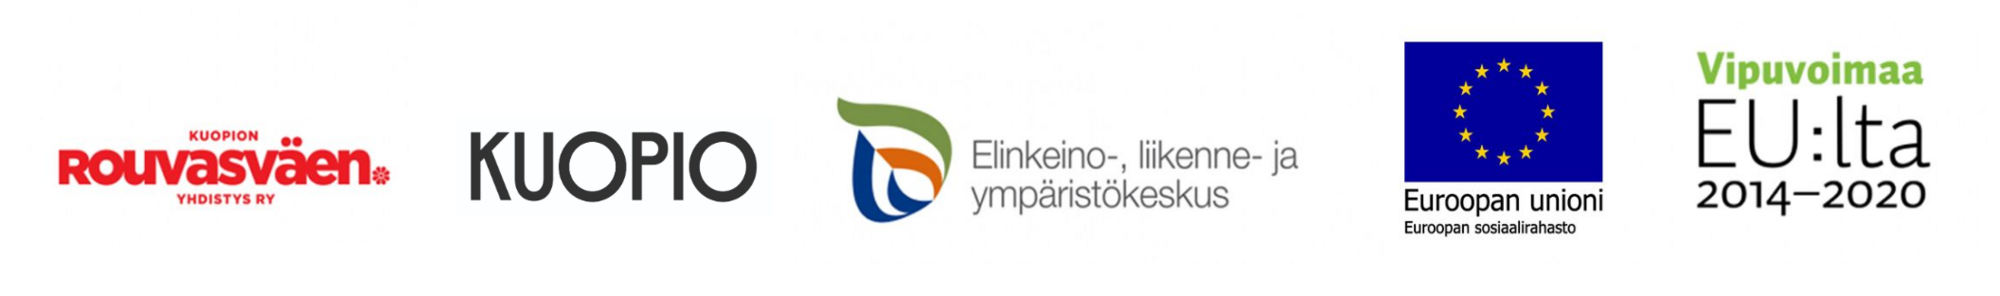 Kasvuohjelmaan osallistuvien toimijoiden logot